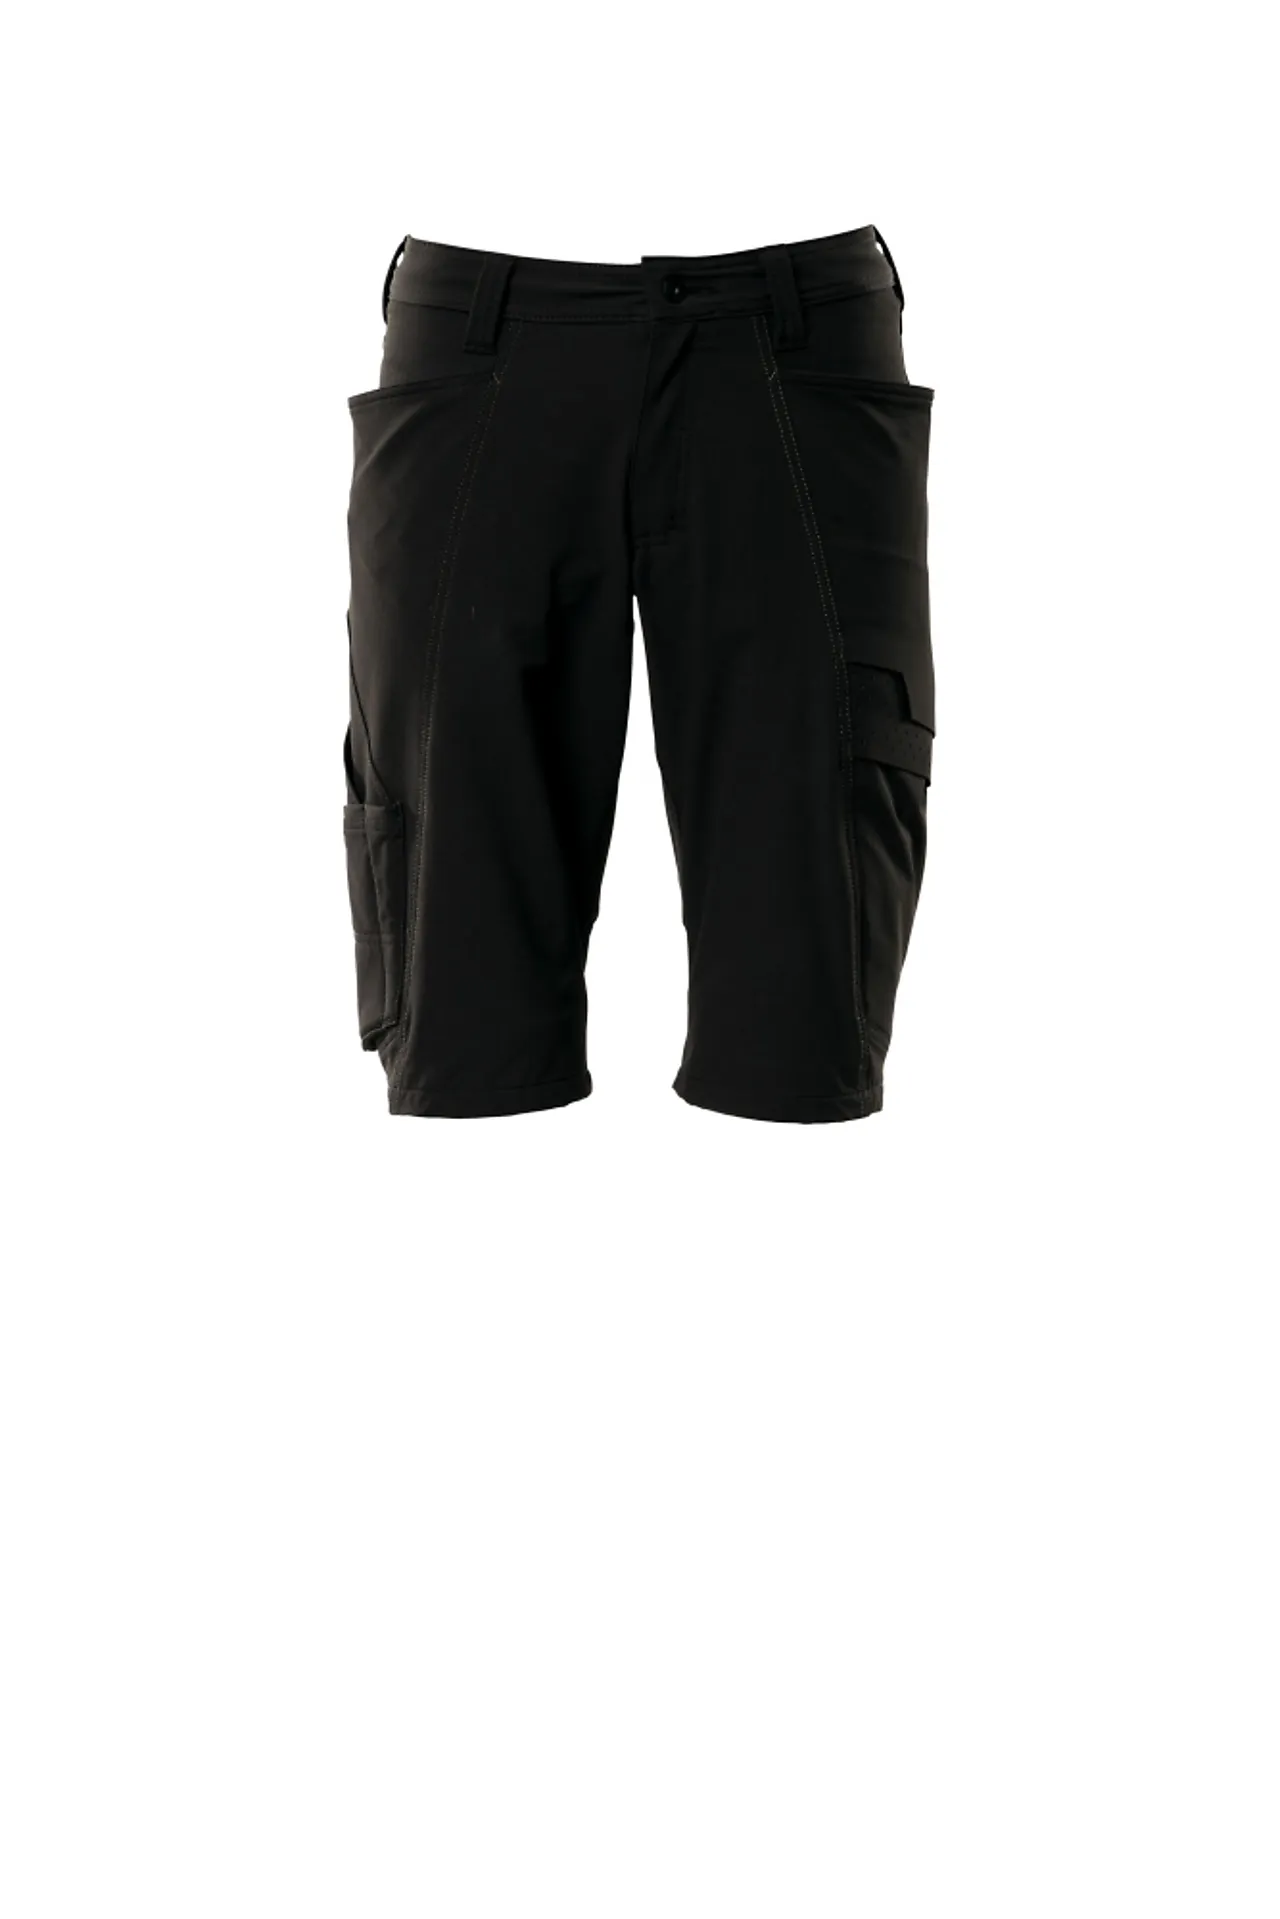 Shorts 18149 svart c50 shorts, fireveis-stretch, lav vekt